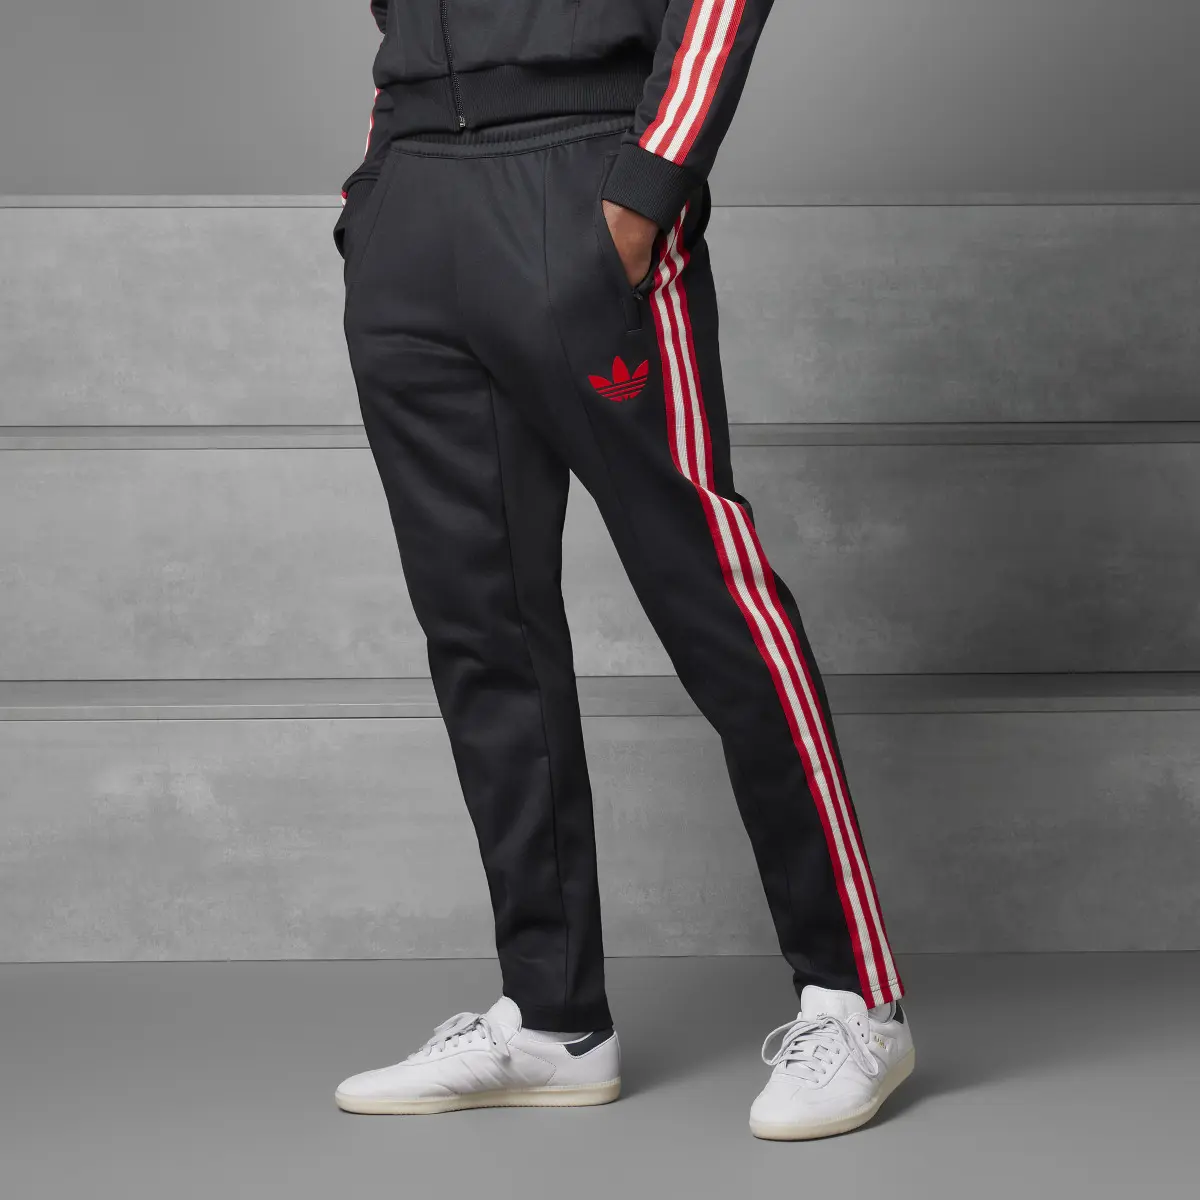 Adidas Track pants OG Ajax Amsterdam. 1